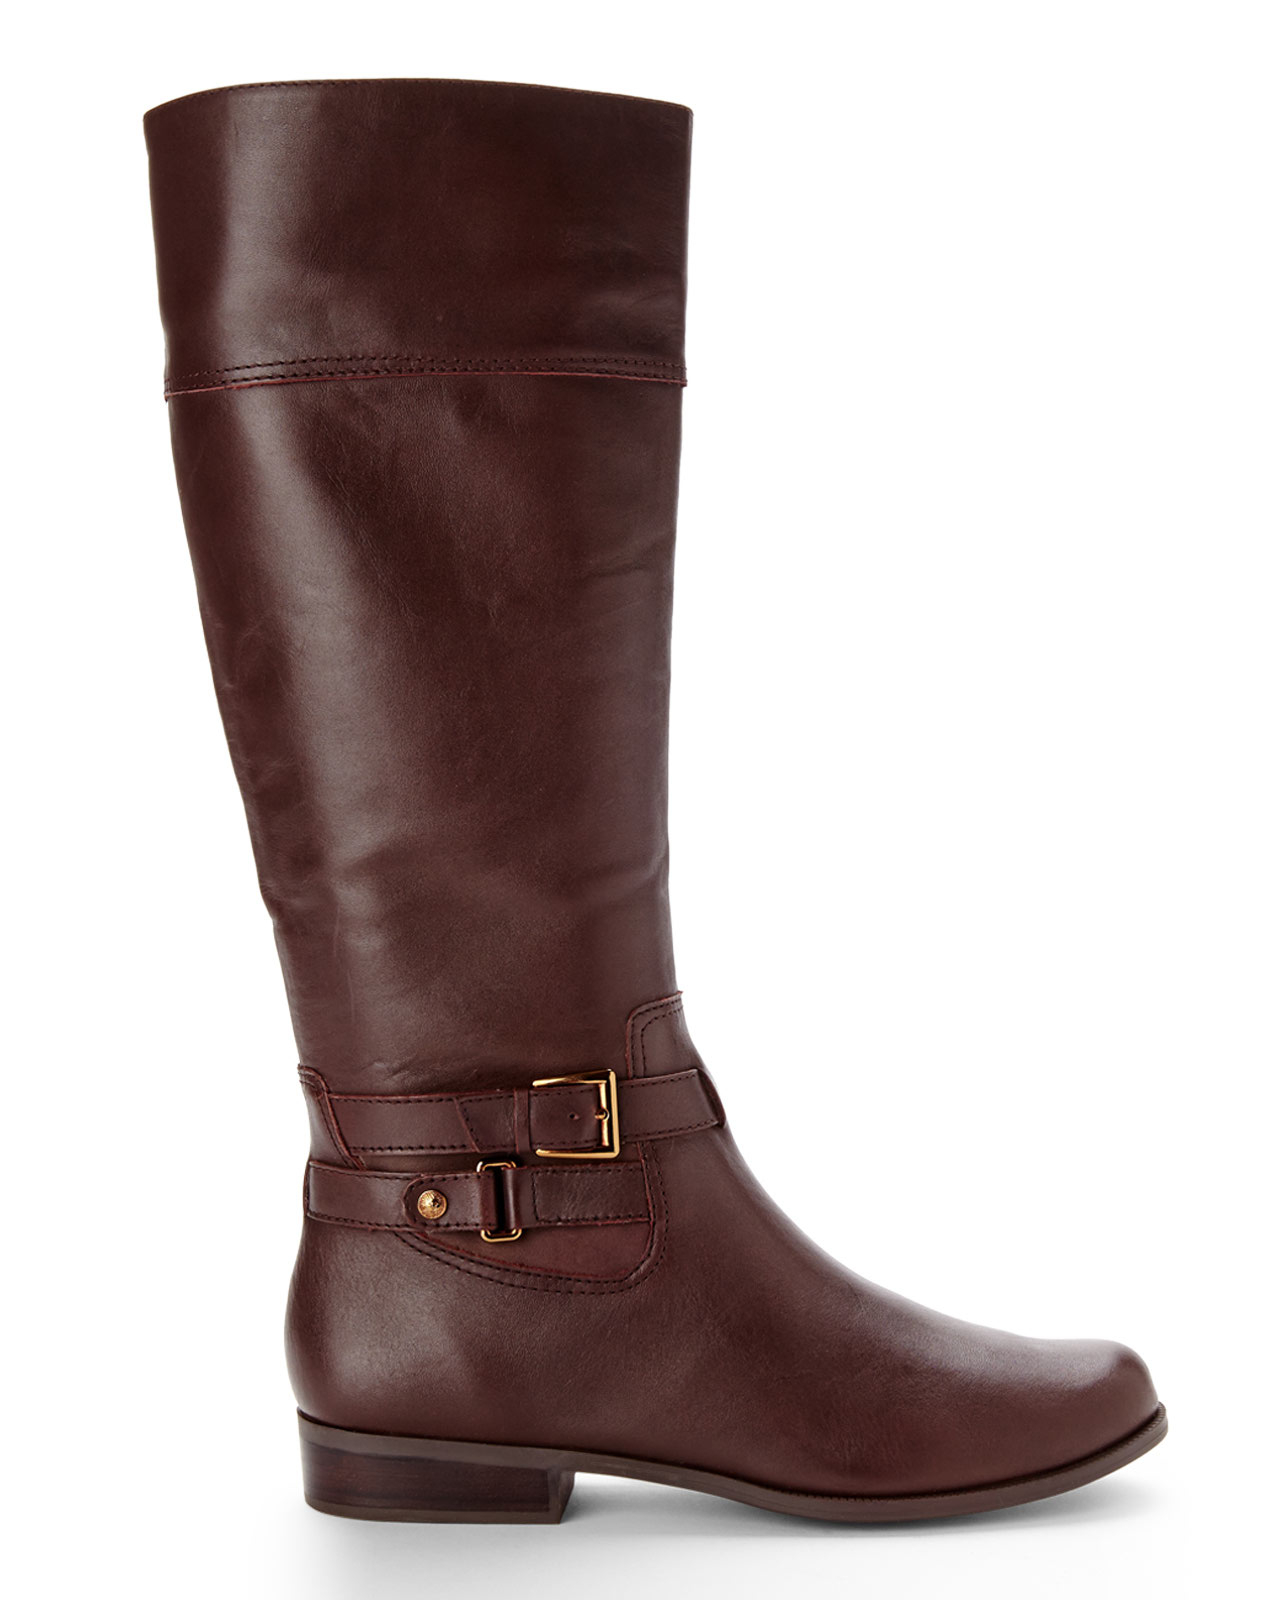 Lyst - Anne Klein Dark Brown Cold Feet Riding Boots in Brown